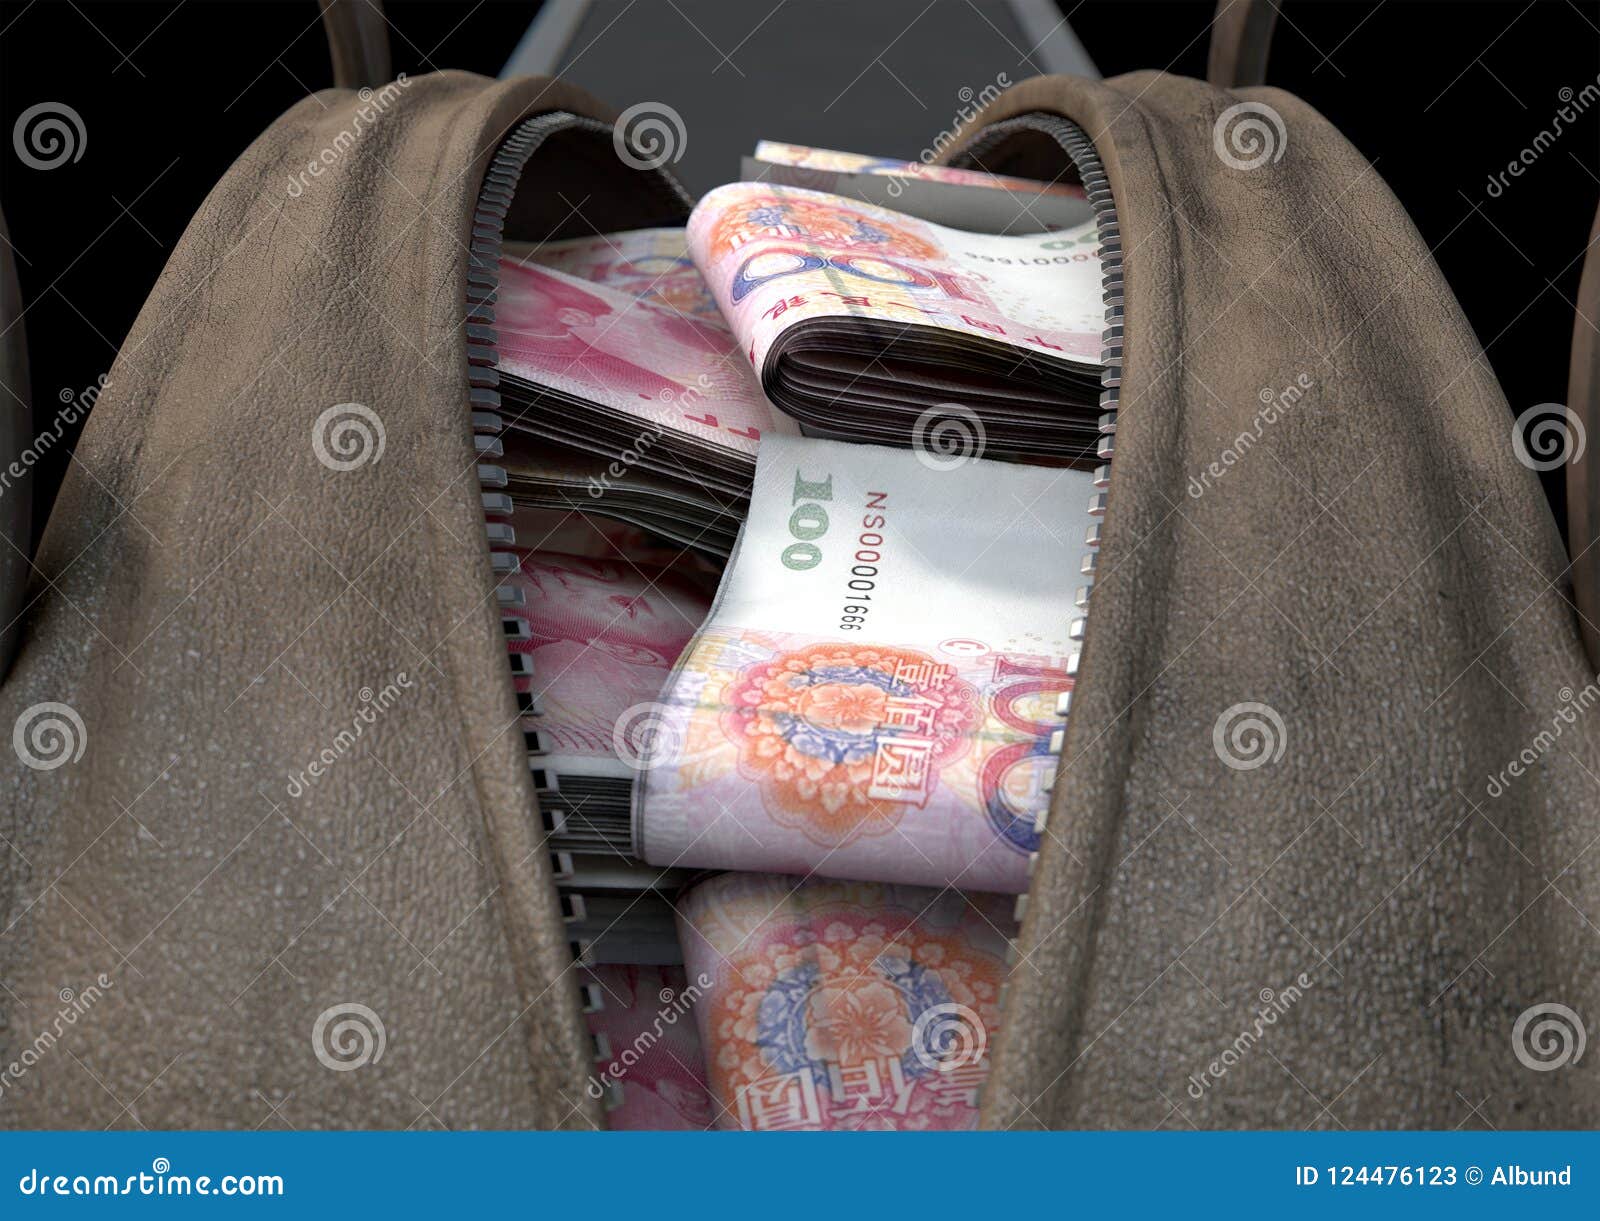 illicit cash in a brown duffel bag